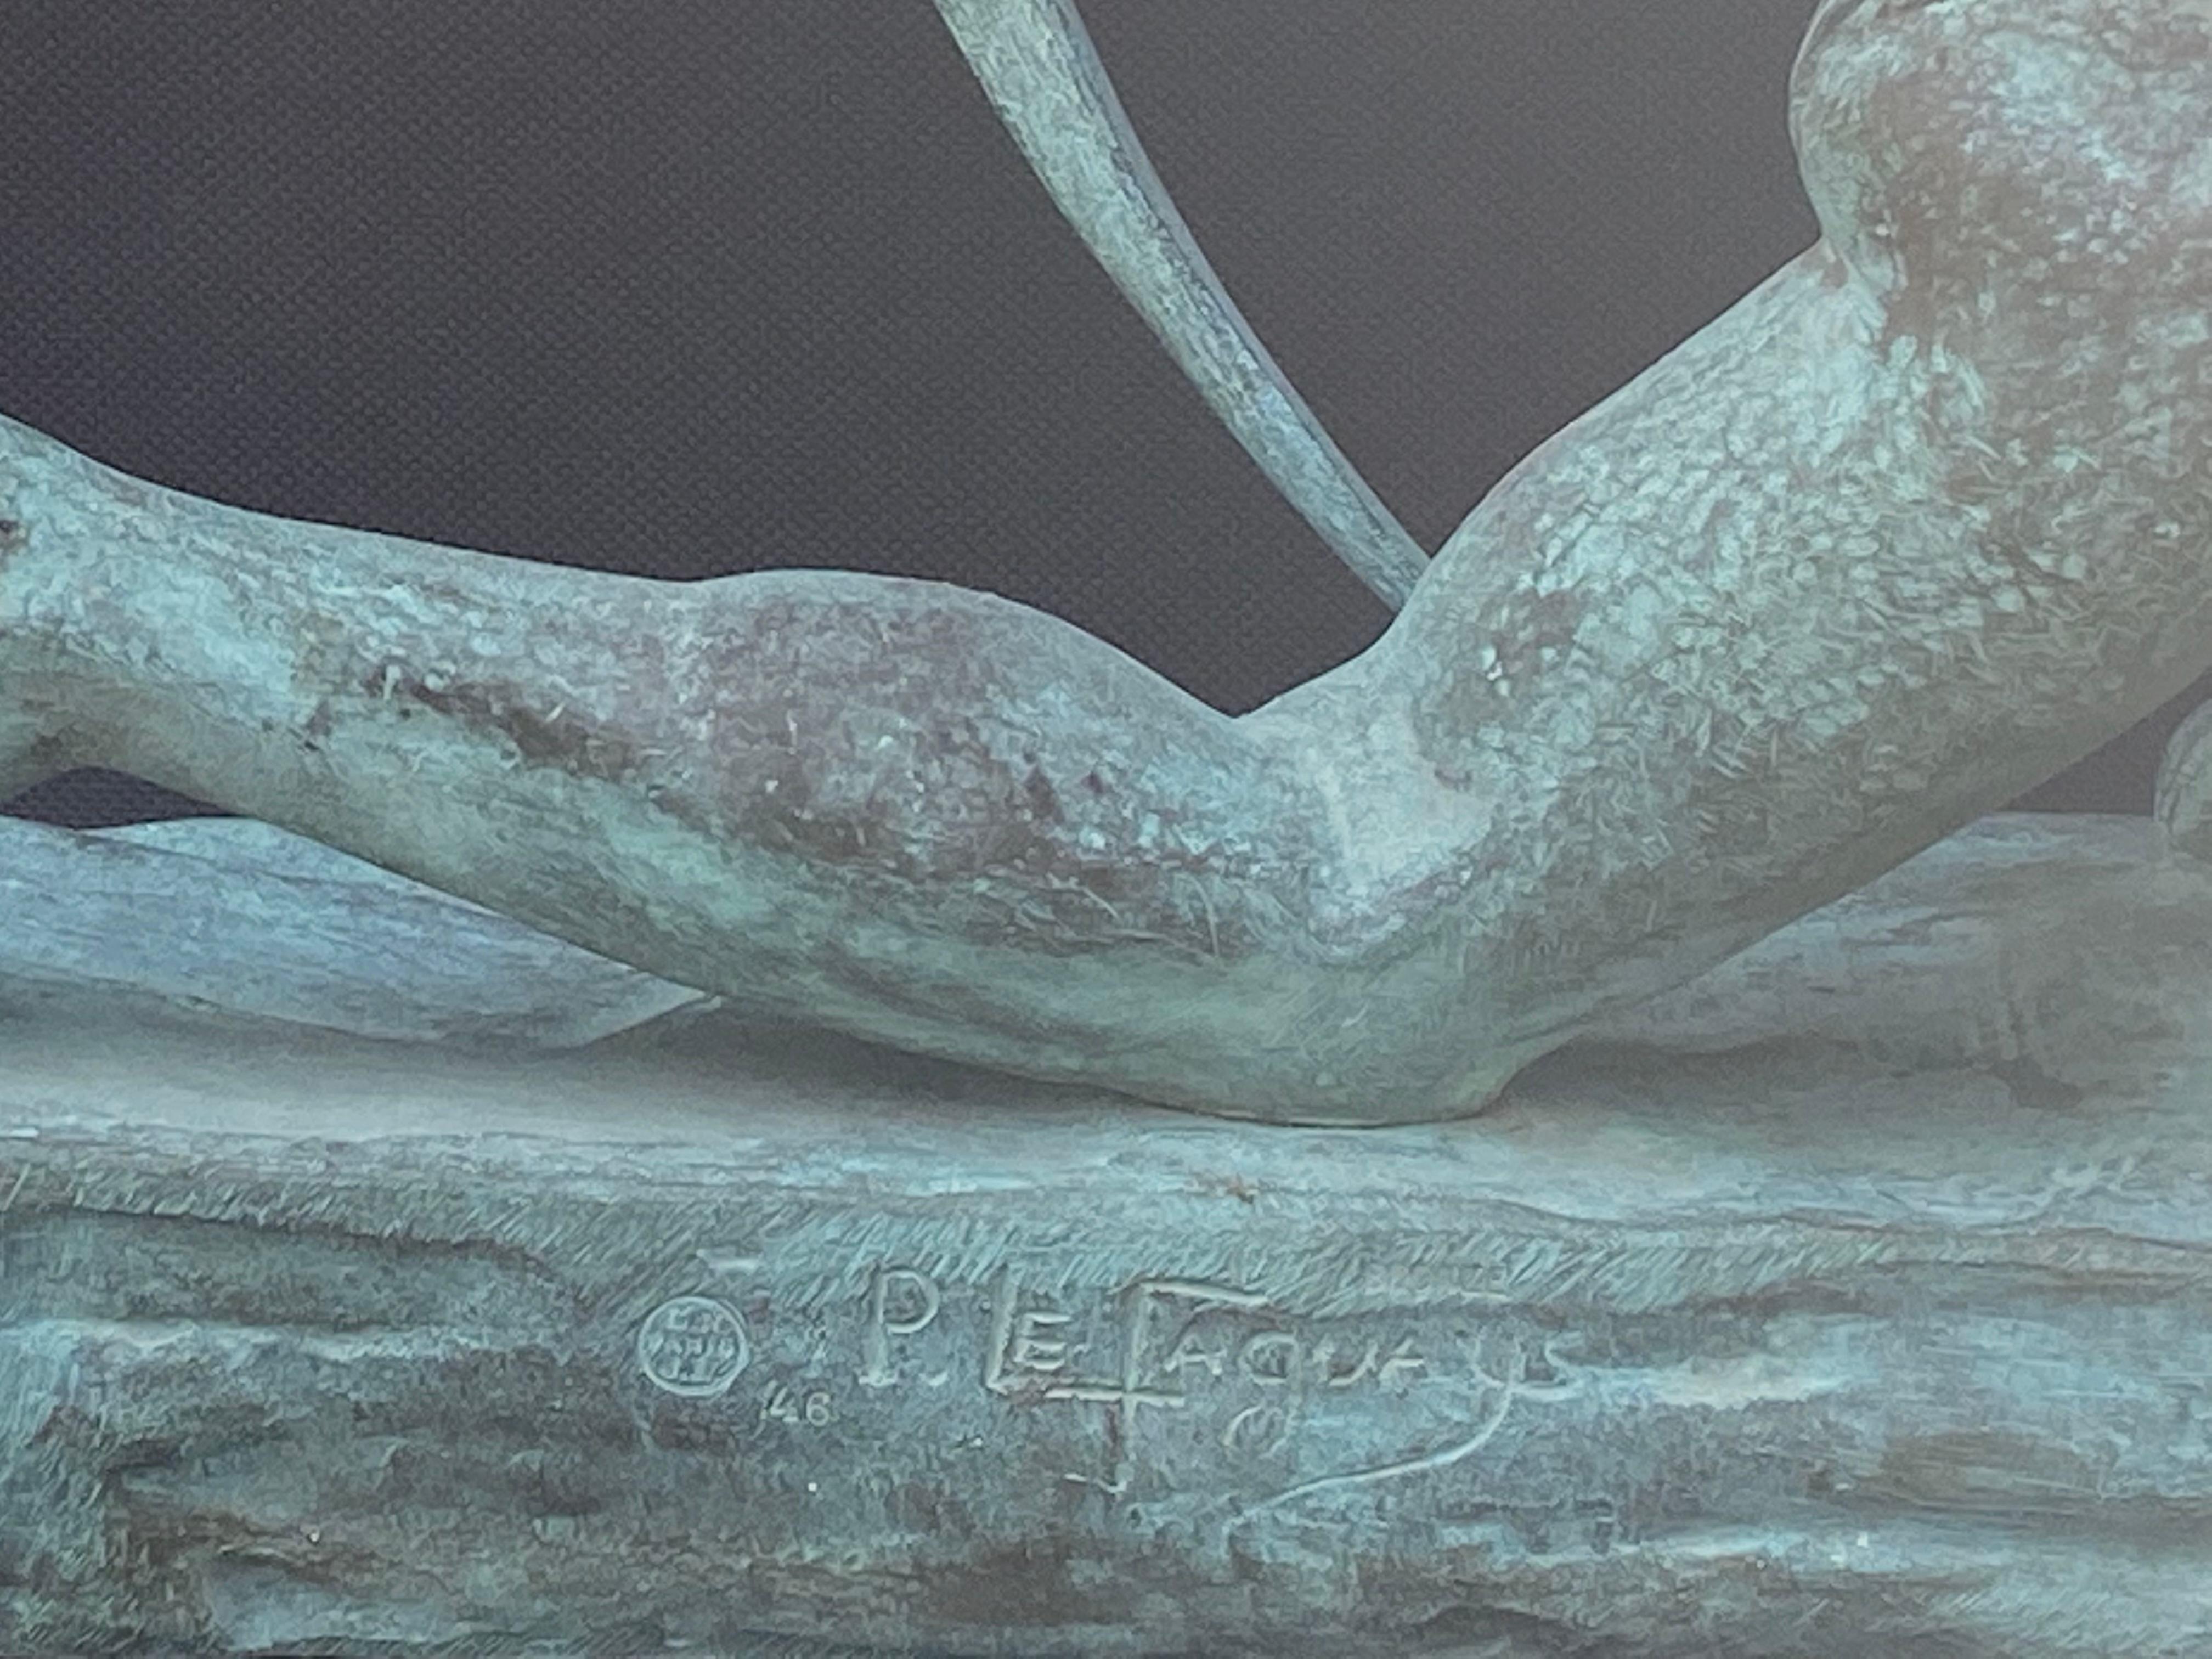 Magnifique bronze Art Déco original d'un archer masculin par le célèbre sculpteur français, Pierre Le Faguays. L'état est très bon. Finition vert verde sur patine bronze. Légère usure due au frottement, compatible avec l'âge, de la finition patinée.